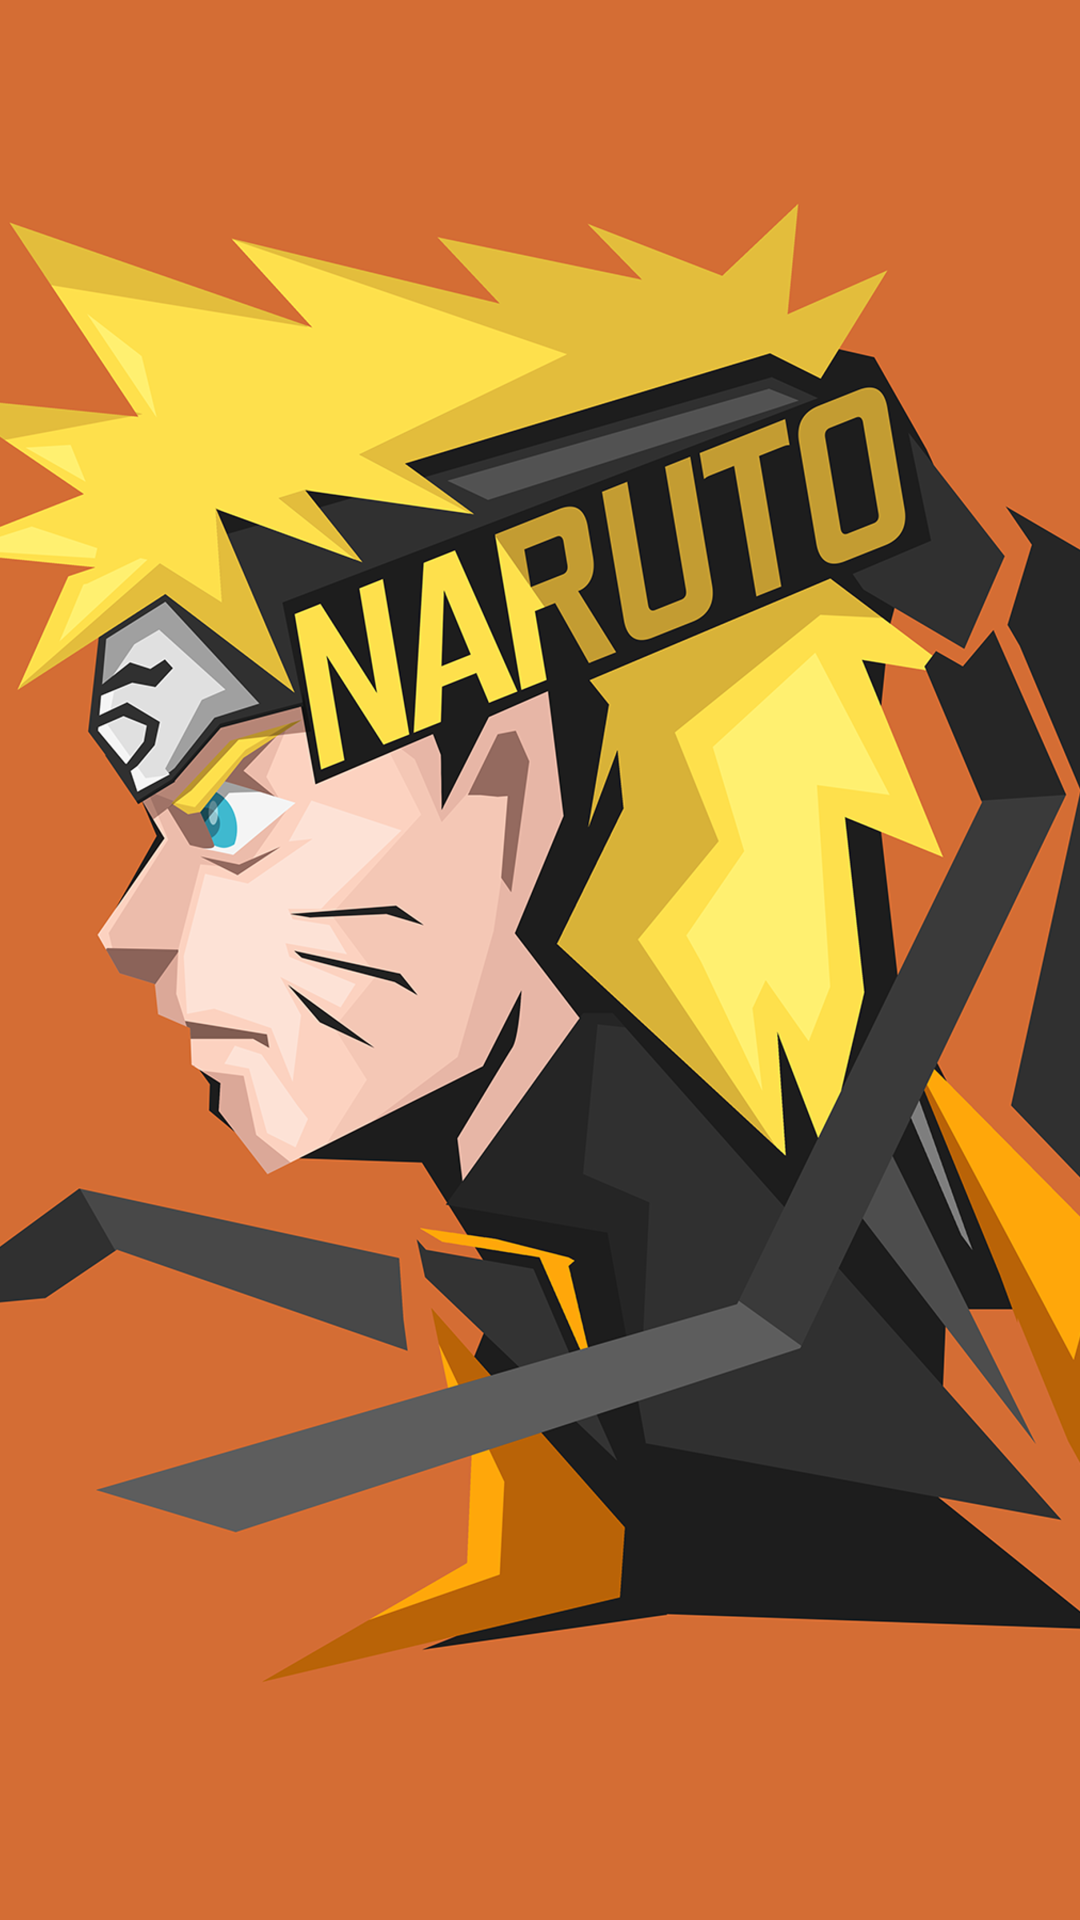 Naruto Uzumaki: Hãy cùng chiêm ngưỡng hình ảnh Naruto Uzumaki - nhân vật chính trong bộ truyện tranh cùng tên, một người được hệ thống ninja tôn vinh với khả năng áp chế Đuổi Bắt, điều khiển Năng Lượng, bảo vệ làng Lá - Tuyệt Vời!